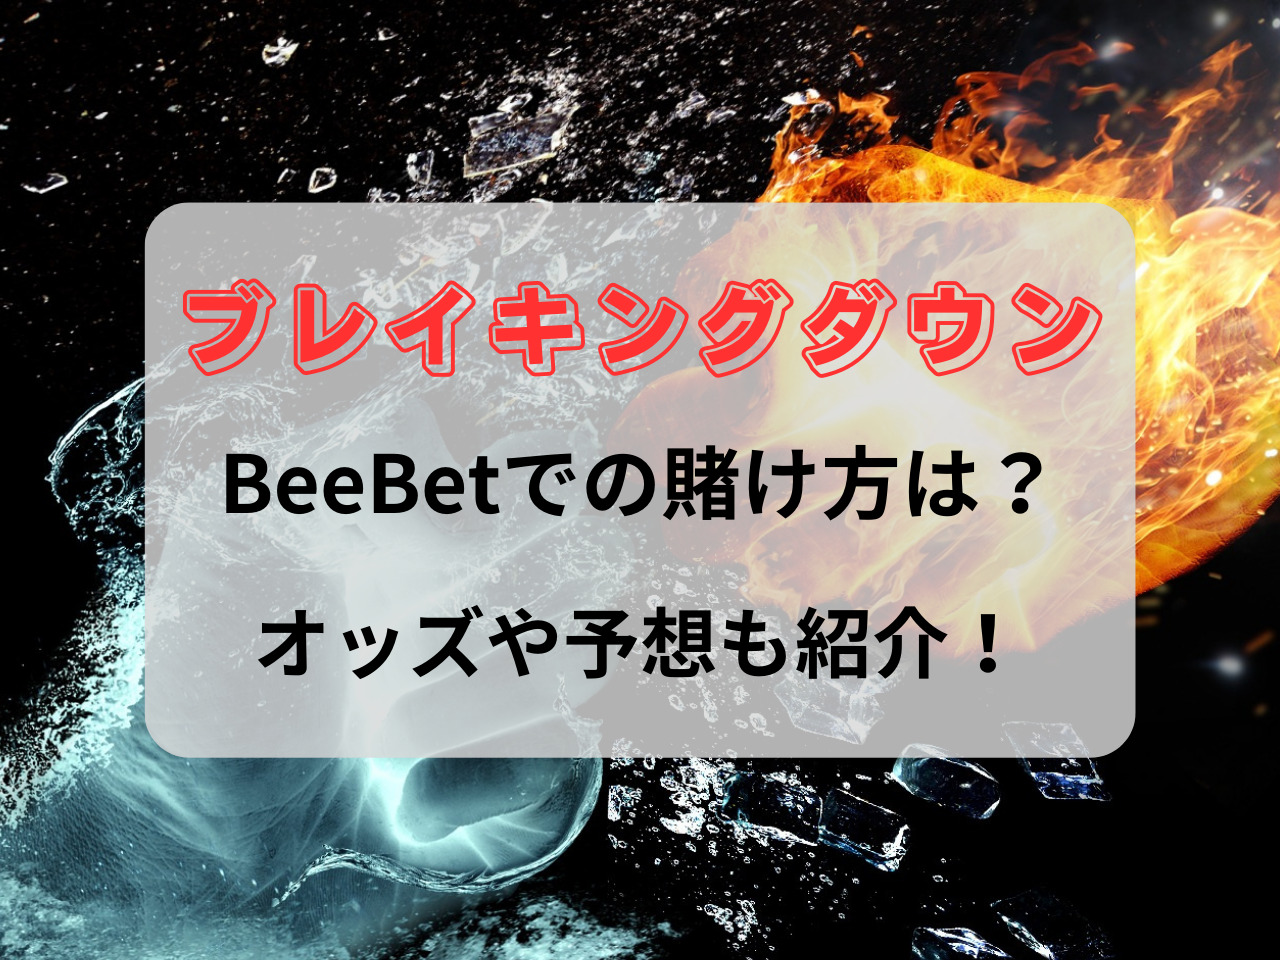 BeeBet ブレイキングダウン 賭け方